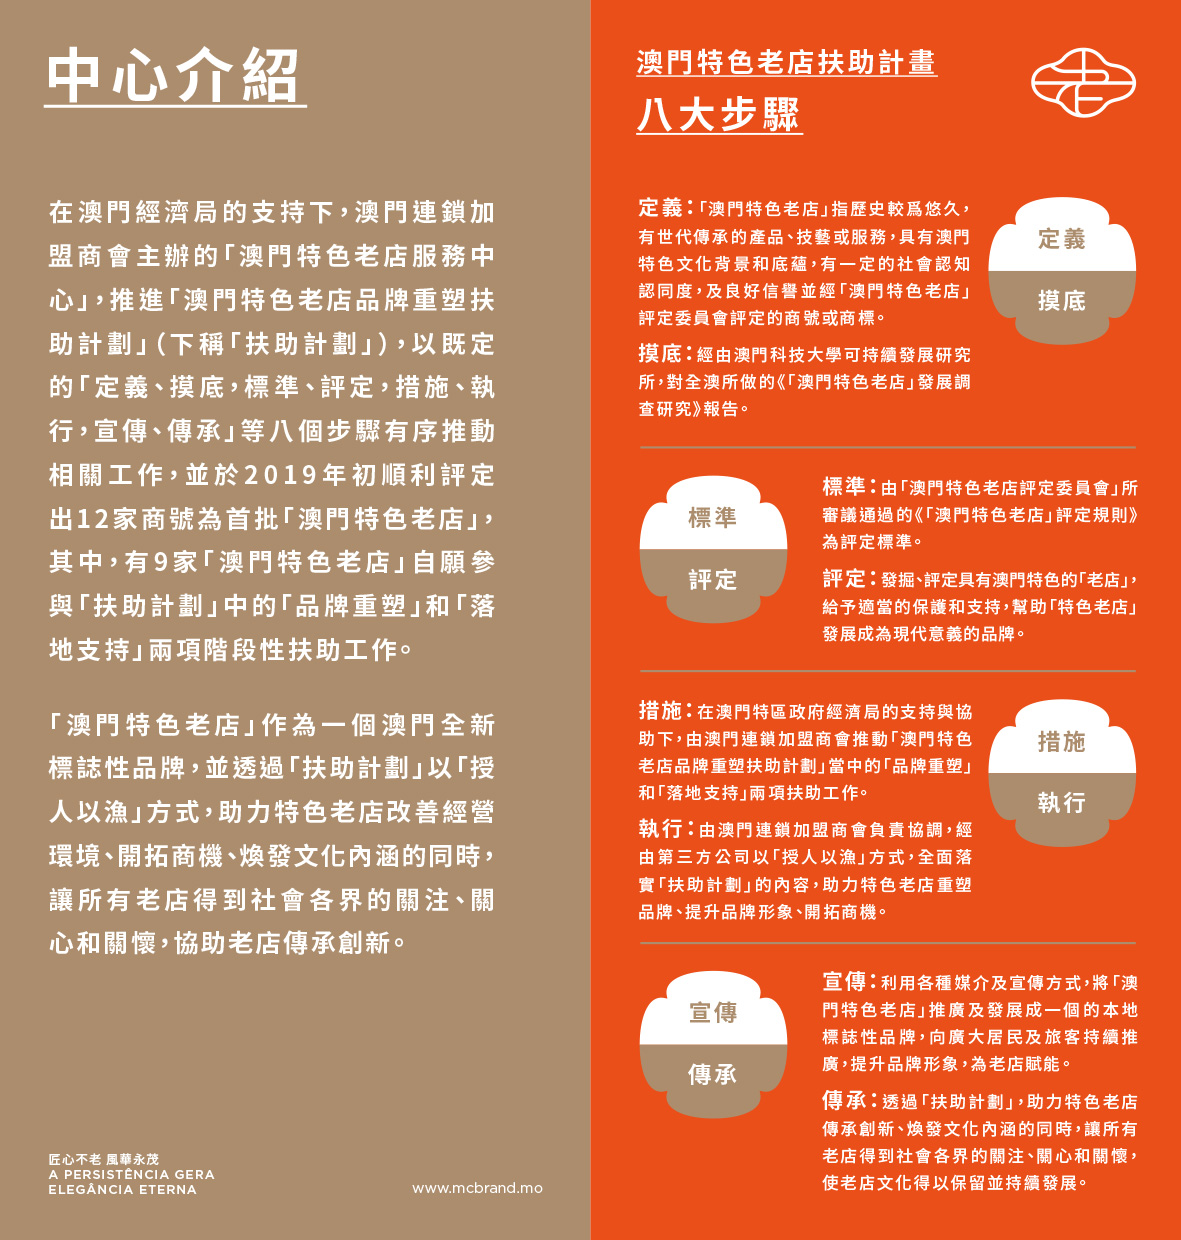 200309-Macao Classic Brand-branding-leaflet-cover-01-2.jpg